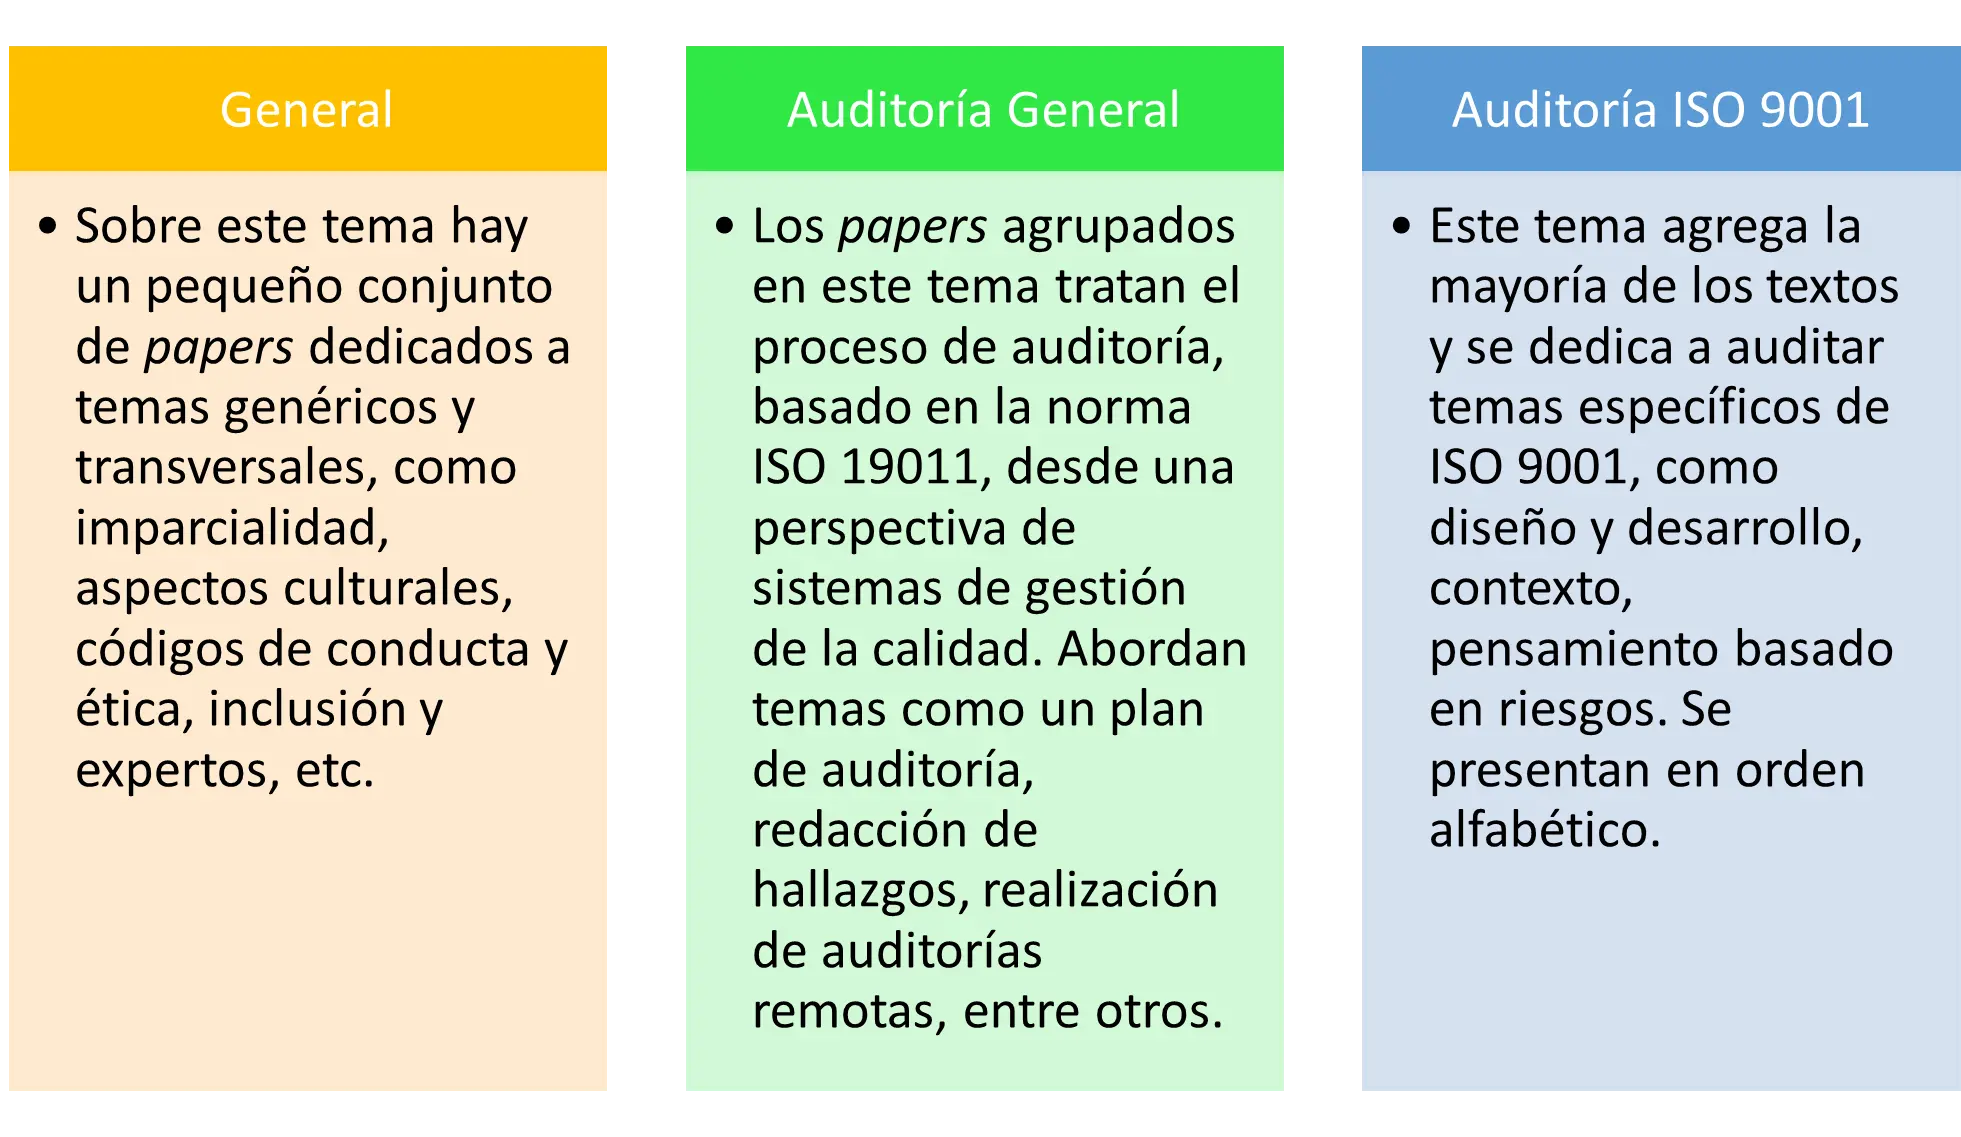 como define iso a auditoria - Cuál es el ISO que certifica a la auditoría de sistema